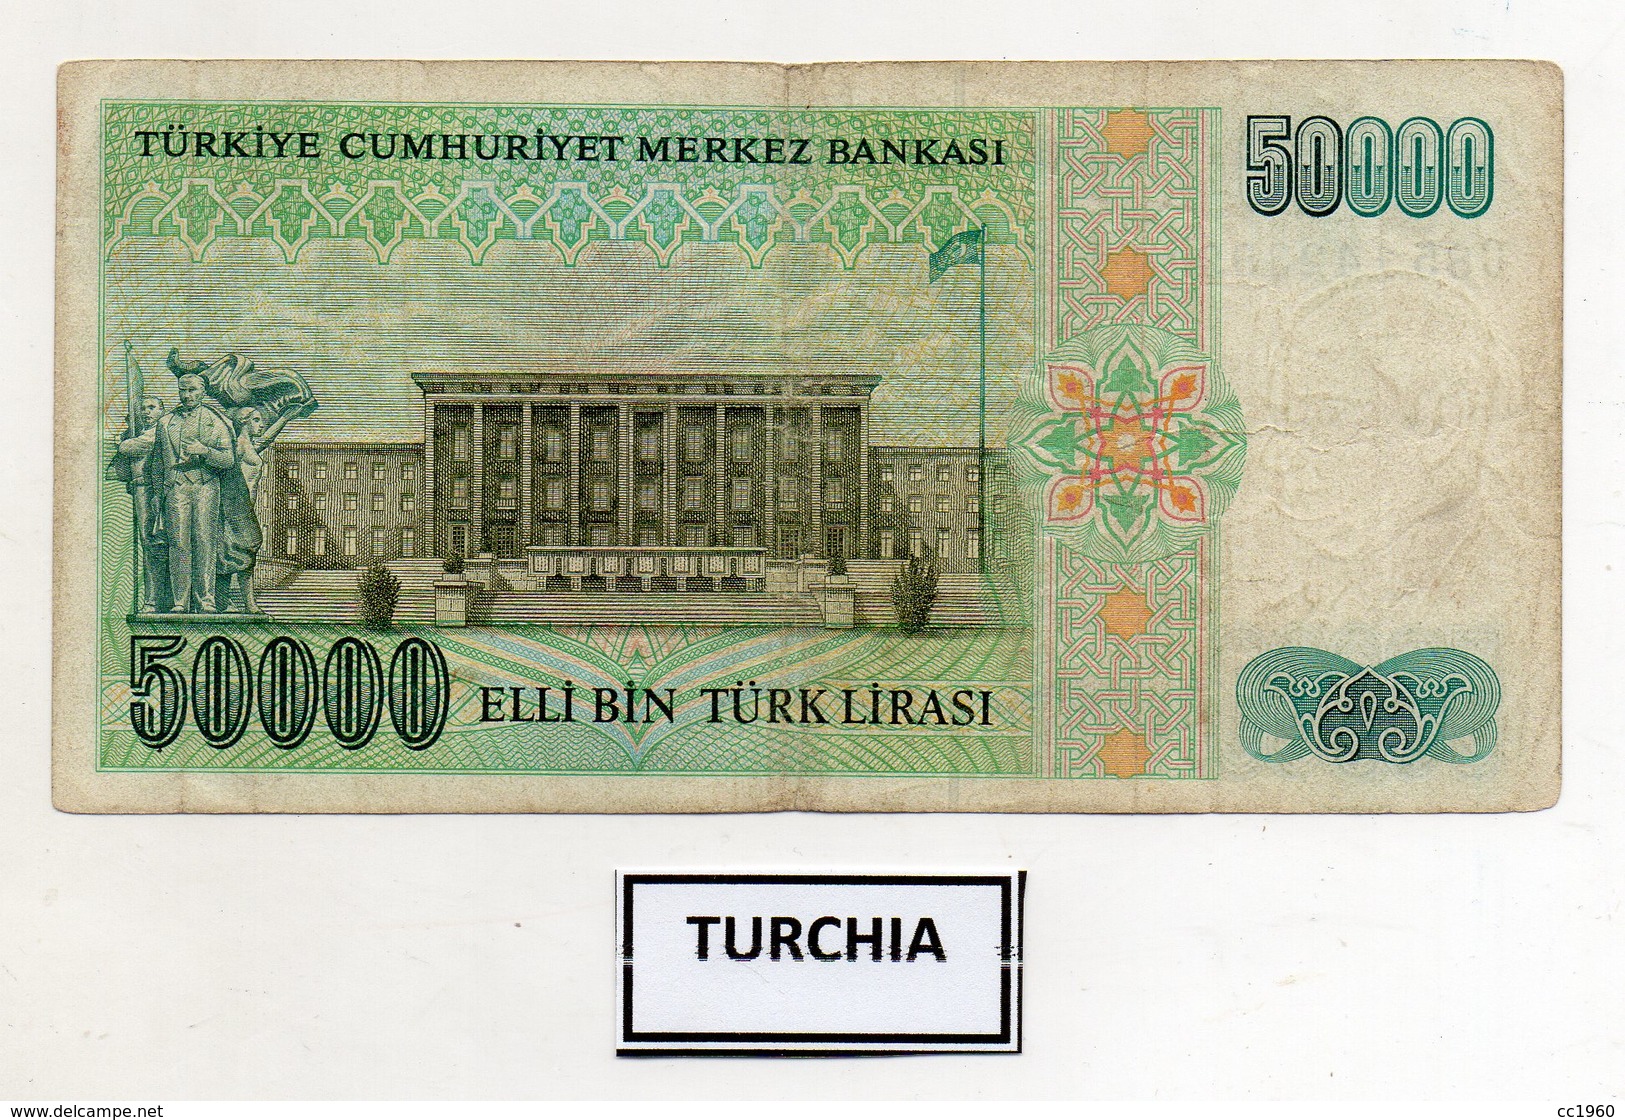 Turchia - 1970 - Banconota Da 50.000 Lire Turche - Usata -  (FDC9826) - Turchia